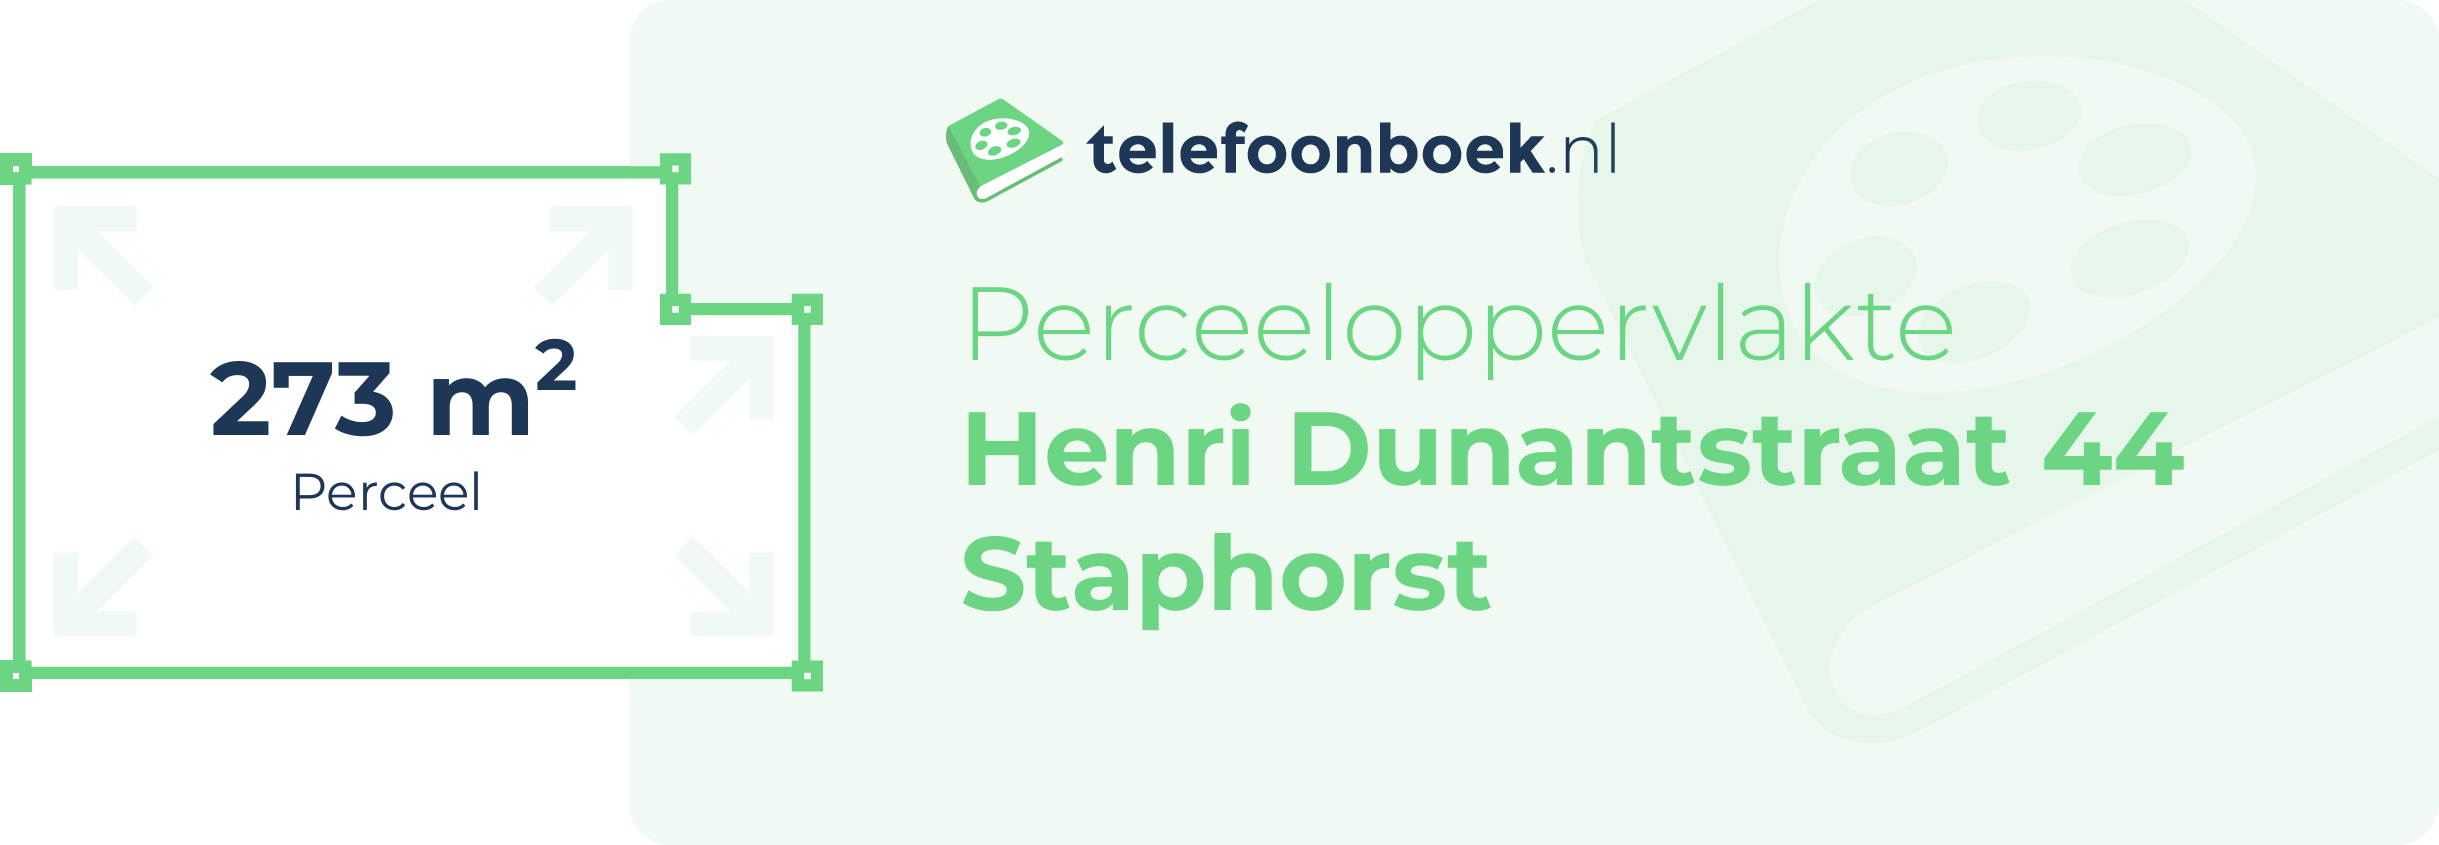 Perceeloppervlakte Henri Dunantstraat 44 Staphorst